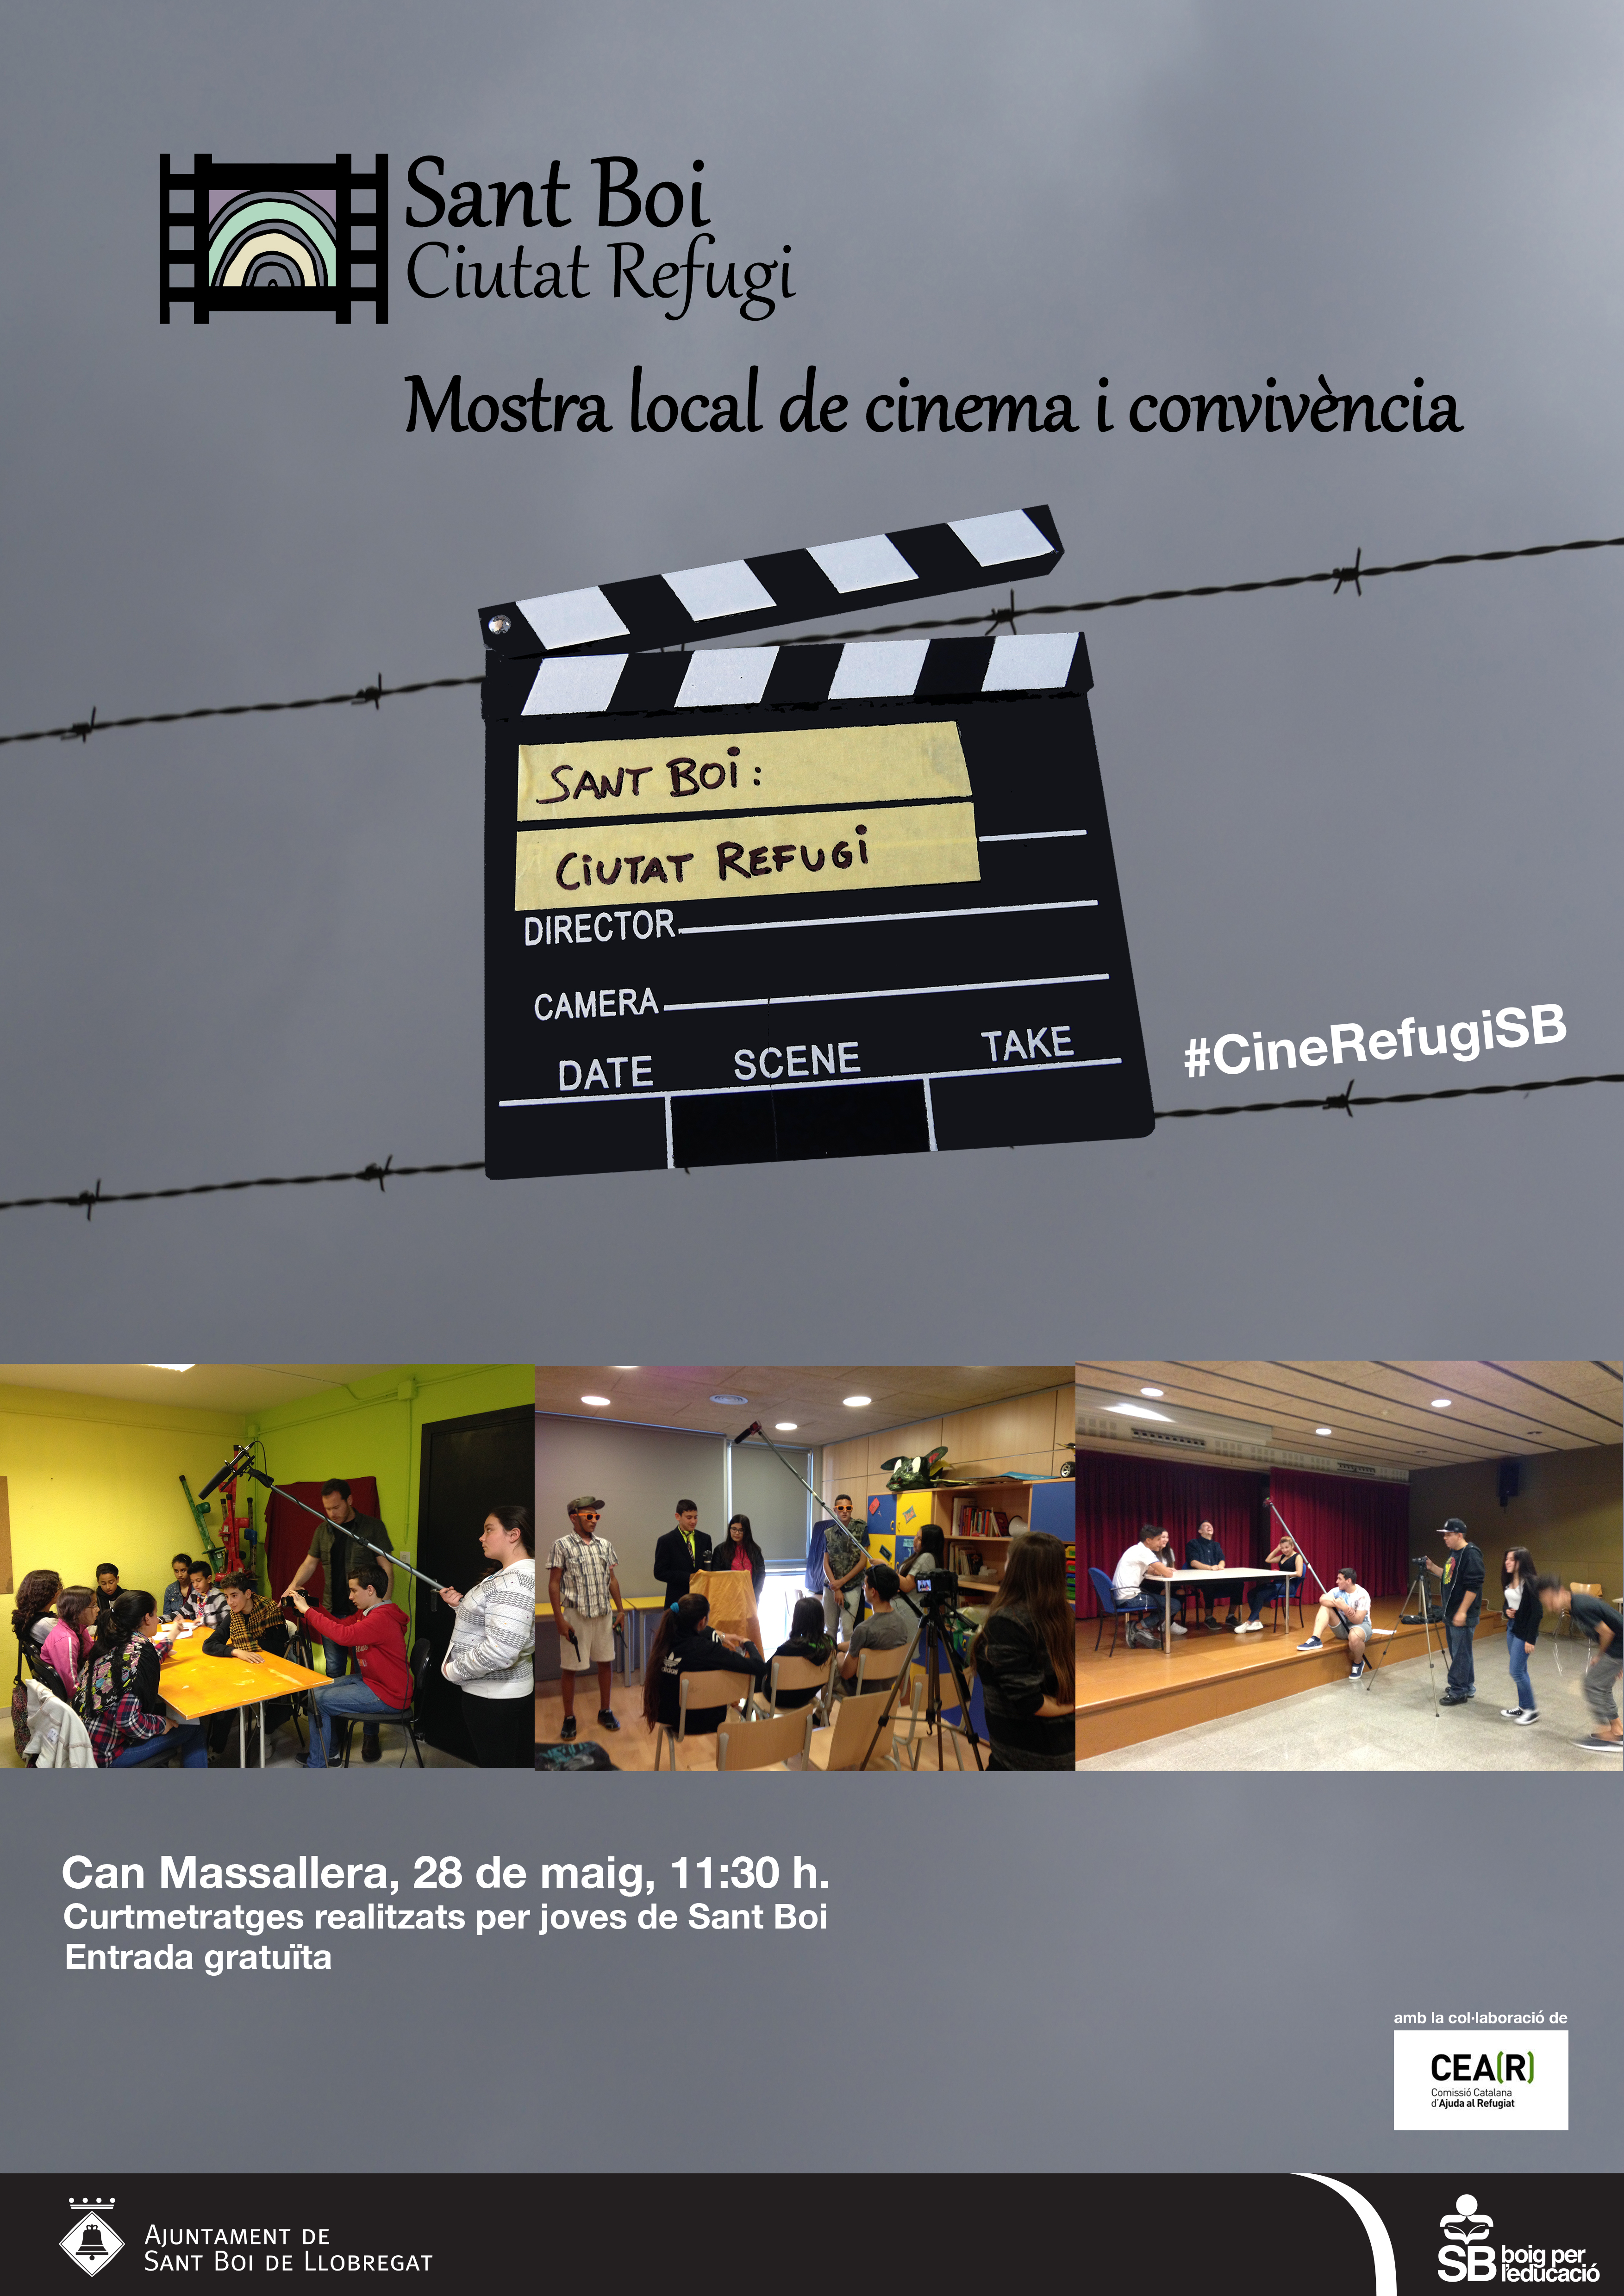 Mostra Local De Cinema I Convivència: Sant Boi, Ciutat Refugi